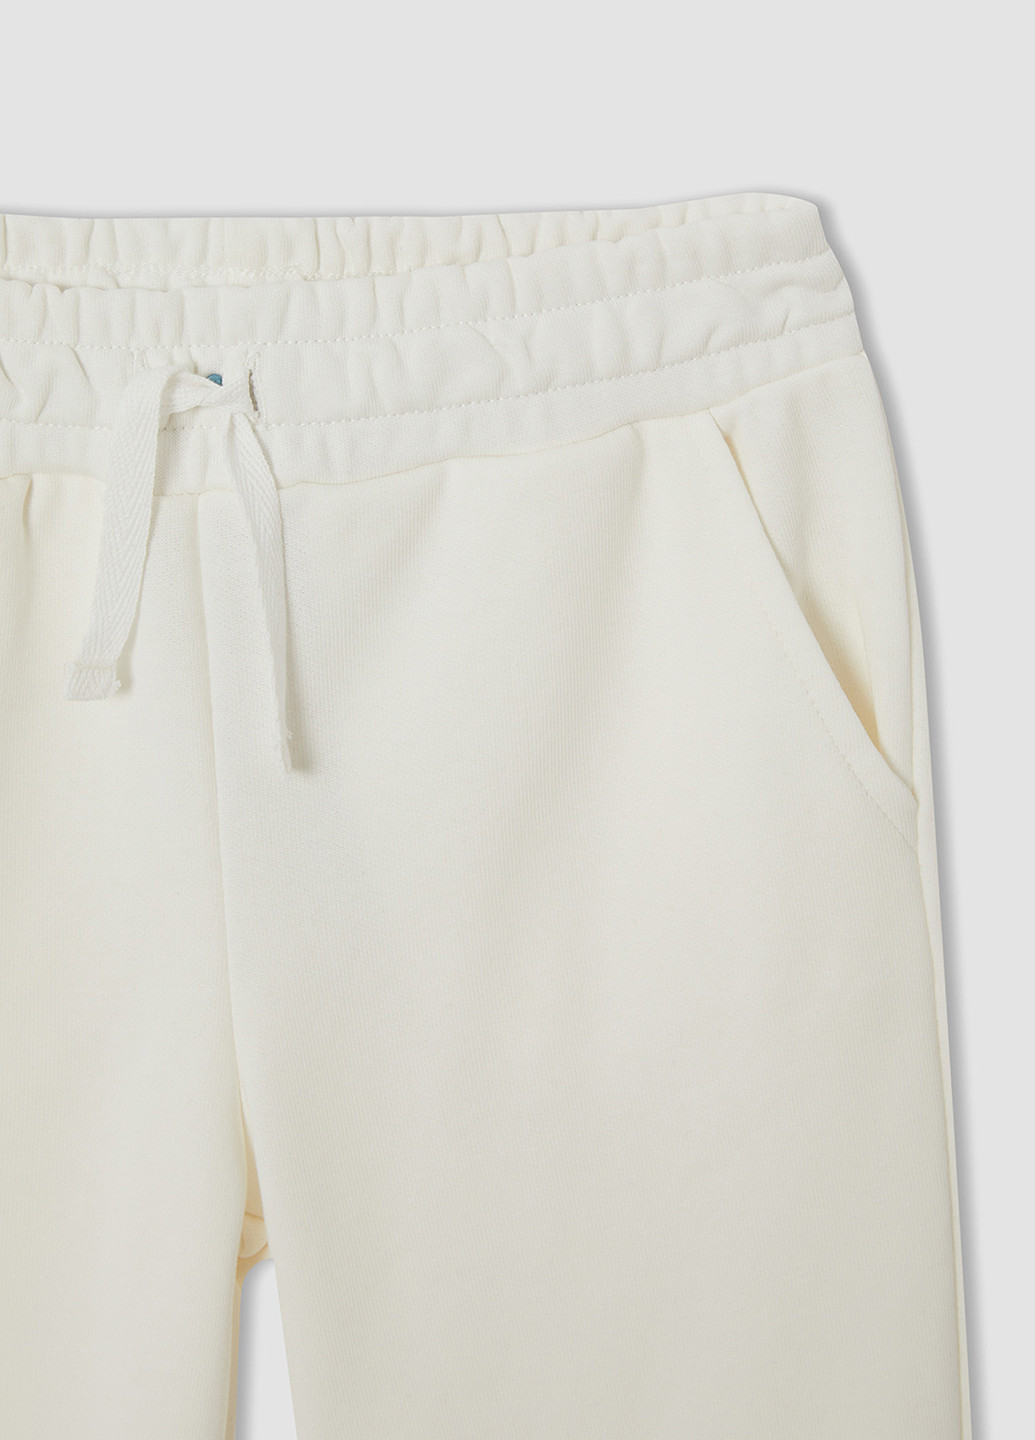 Белые кэжуал демисезонные джоггеры брюки DeFacto